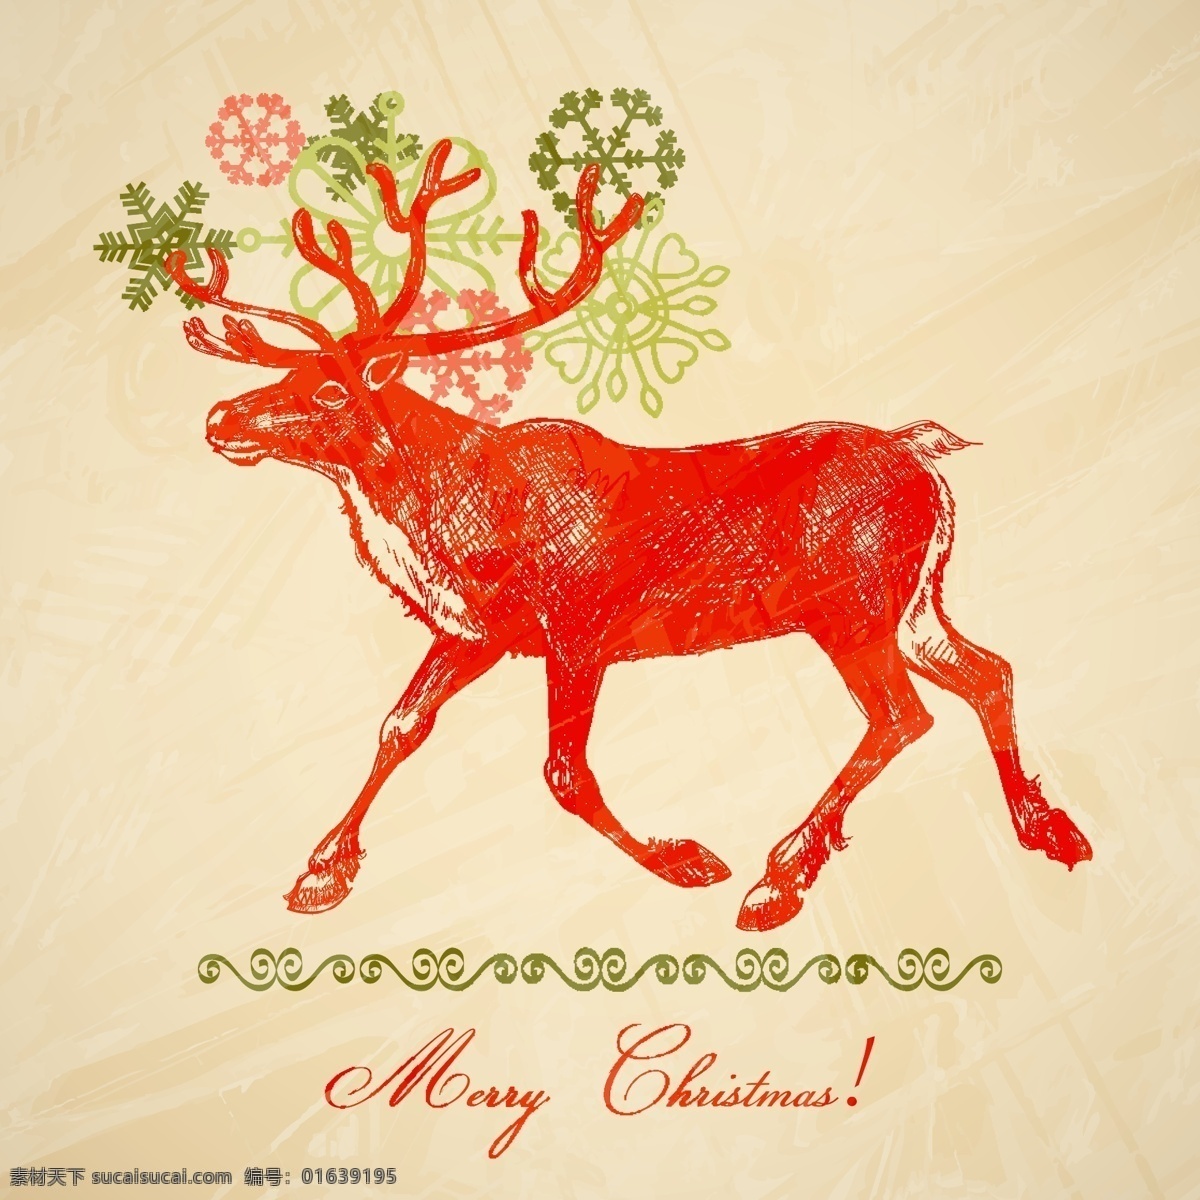 圣诞节 麋鹿 矢量 eps格式 背景 彩绘 插画 矢量图 手绘 雪花 装饰 风格 节日素材 其他节日